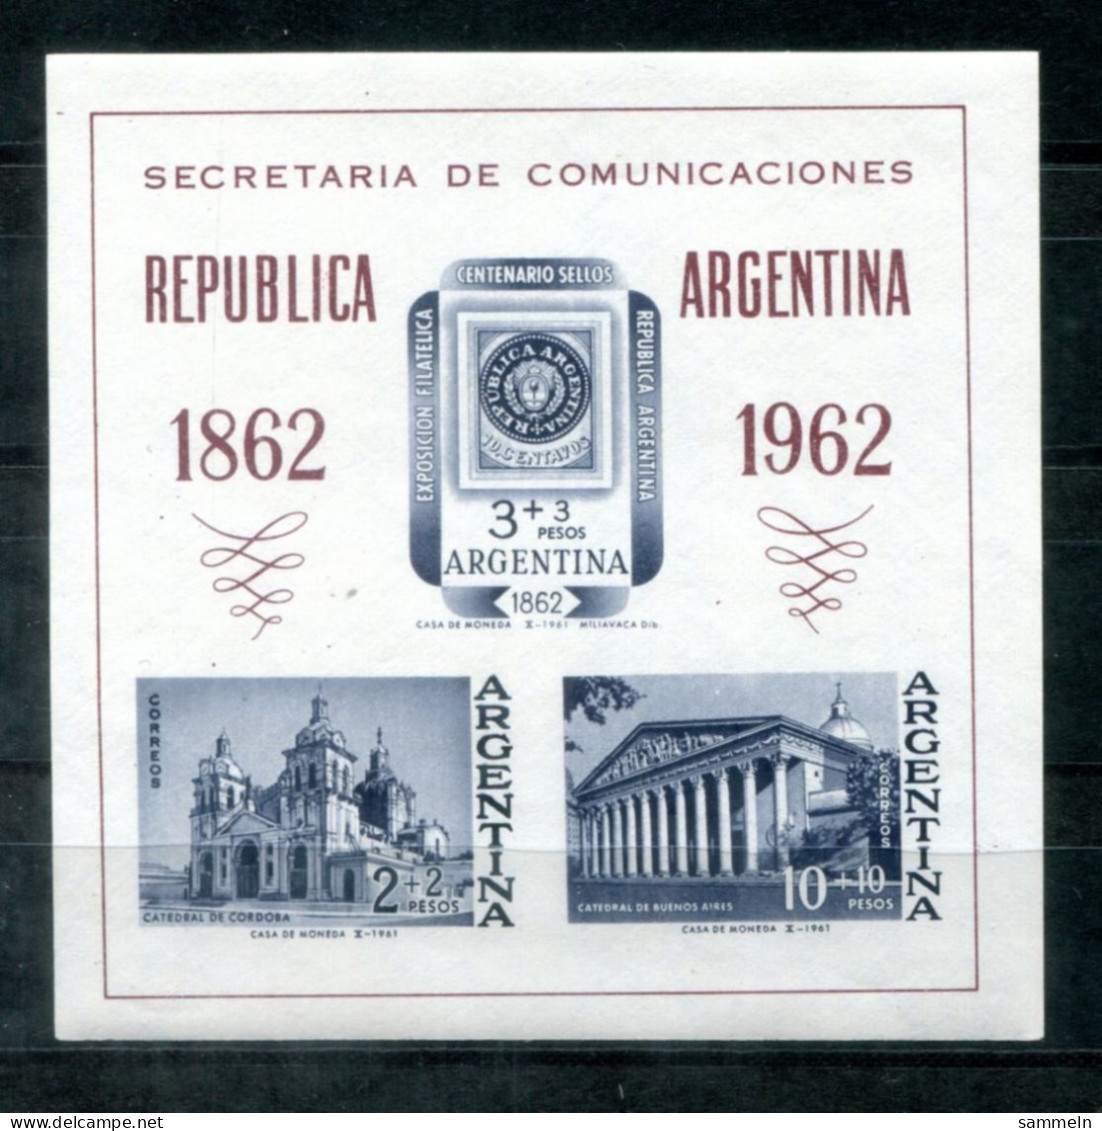 ARGENTINIEN Block 15, Bl.15 Mnh - Marke Auf Marke, Stamp On Stamp, Timbre Sur Timbre - ARGENTINA / ARGENTINE - Hojas Bloque